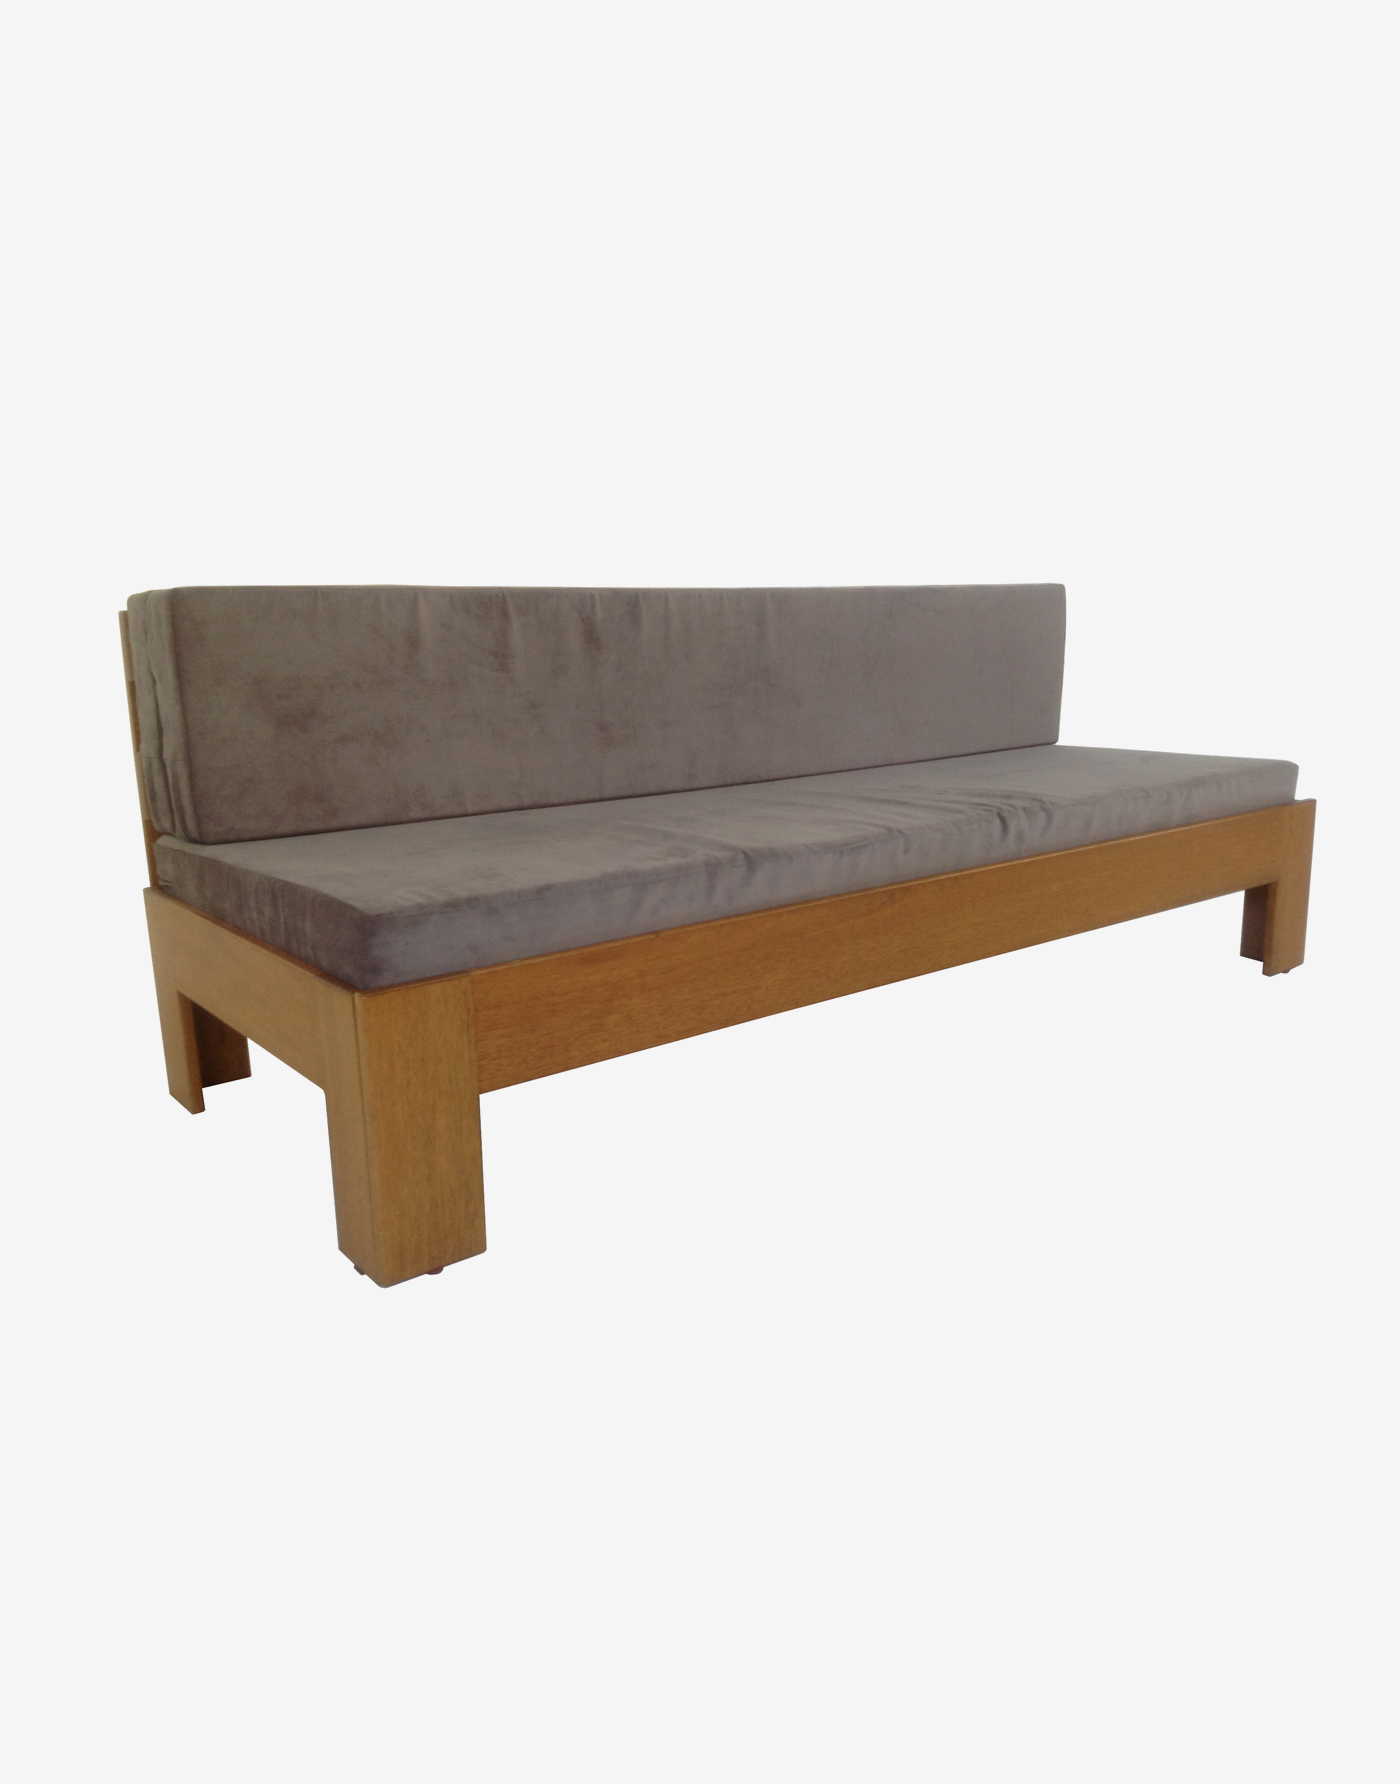 Sofa Bed - Focolare Carpentry - Furniture Manila, Philippines